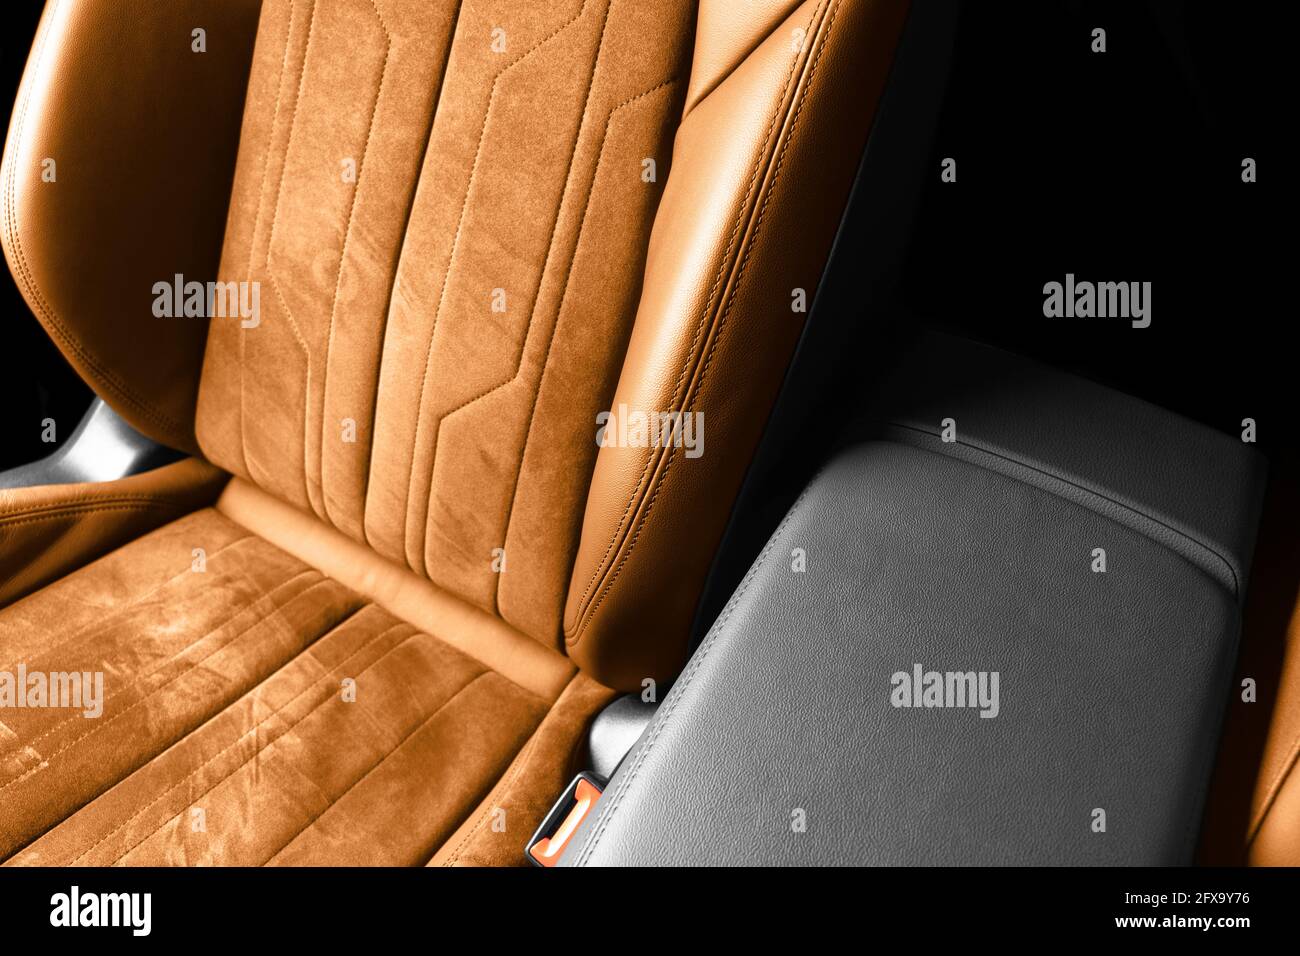 Modernes Luxus Auto braunes Leder mit alcantara Interieur. Teil aus  orangefarbenem Leder mit weißen Ziernähten. Innenraum des Prestige-Autos.  Perfo Stockfotografie - Alamy